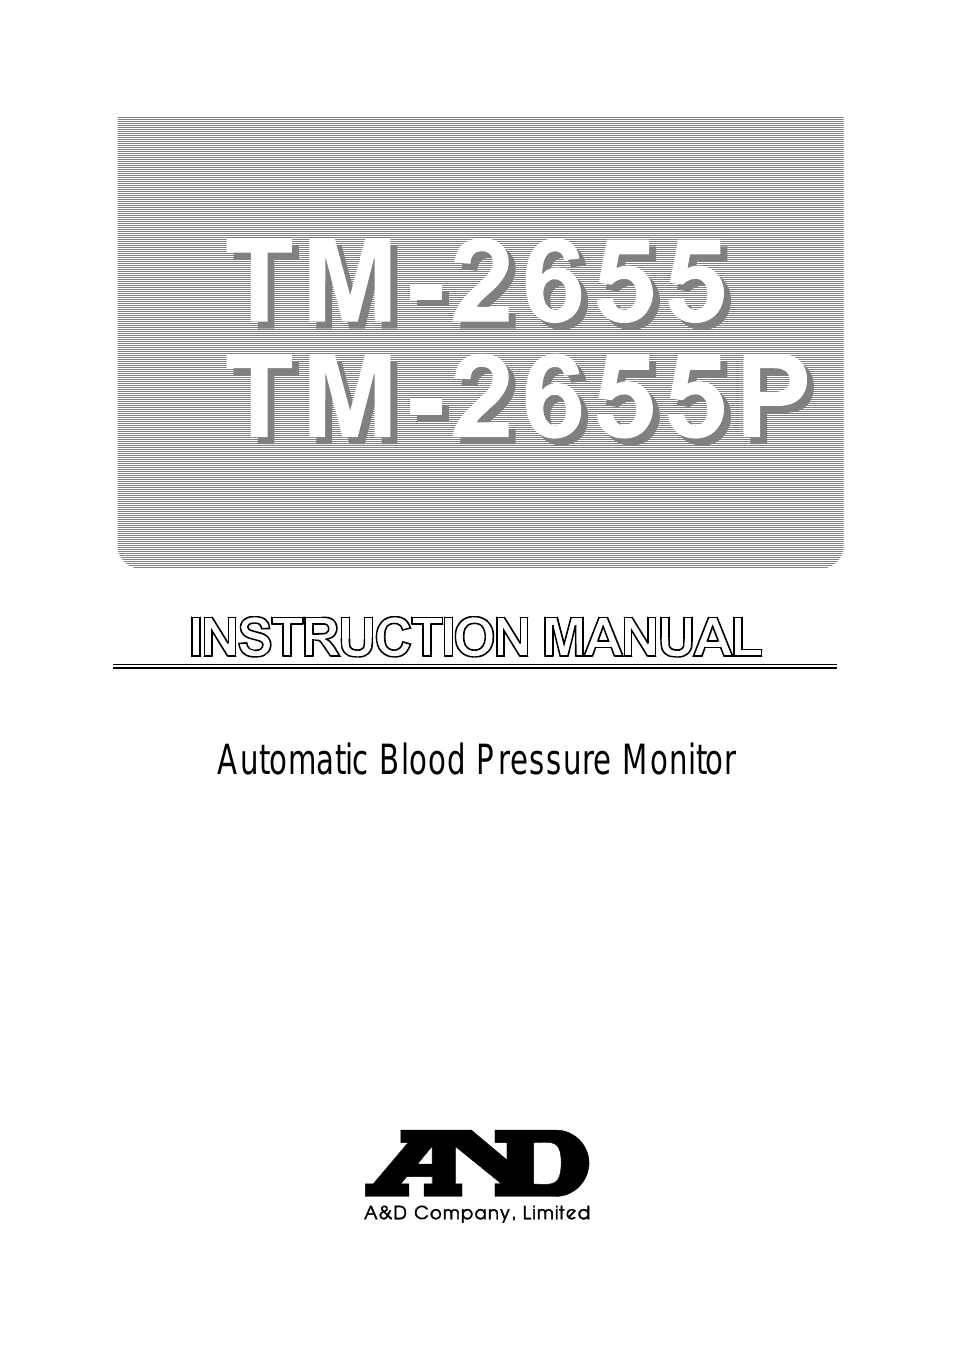 TM-2655P (Page 1)